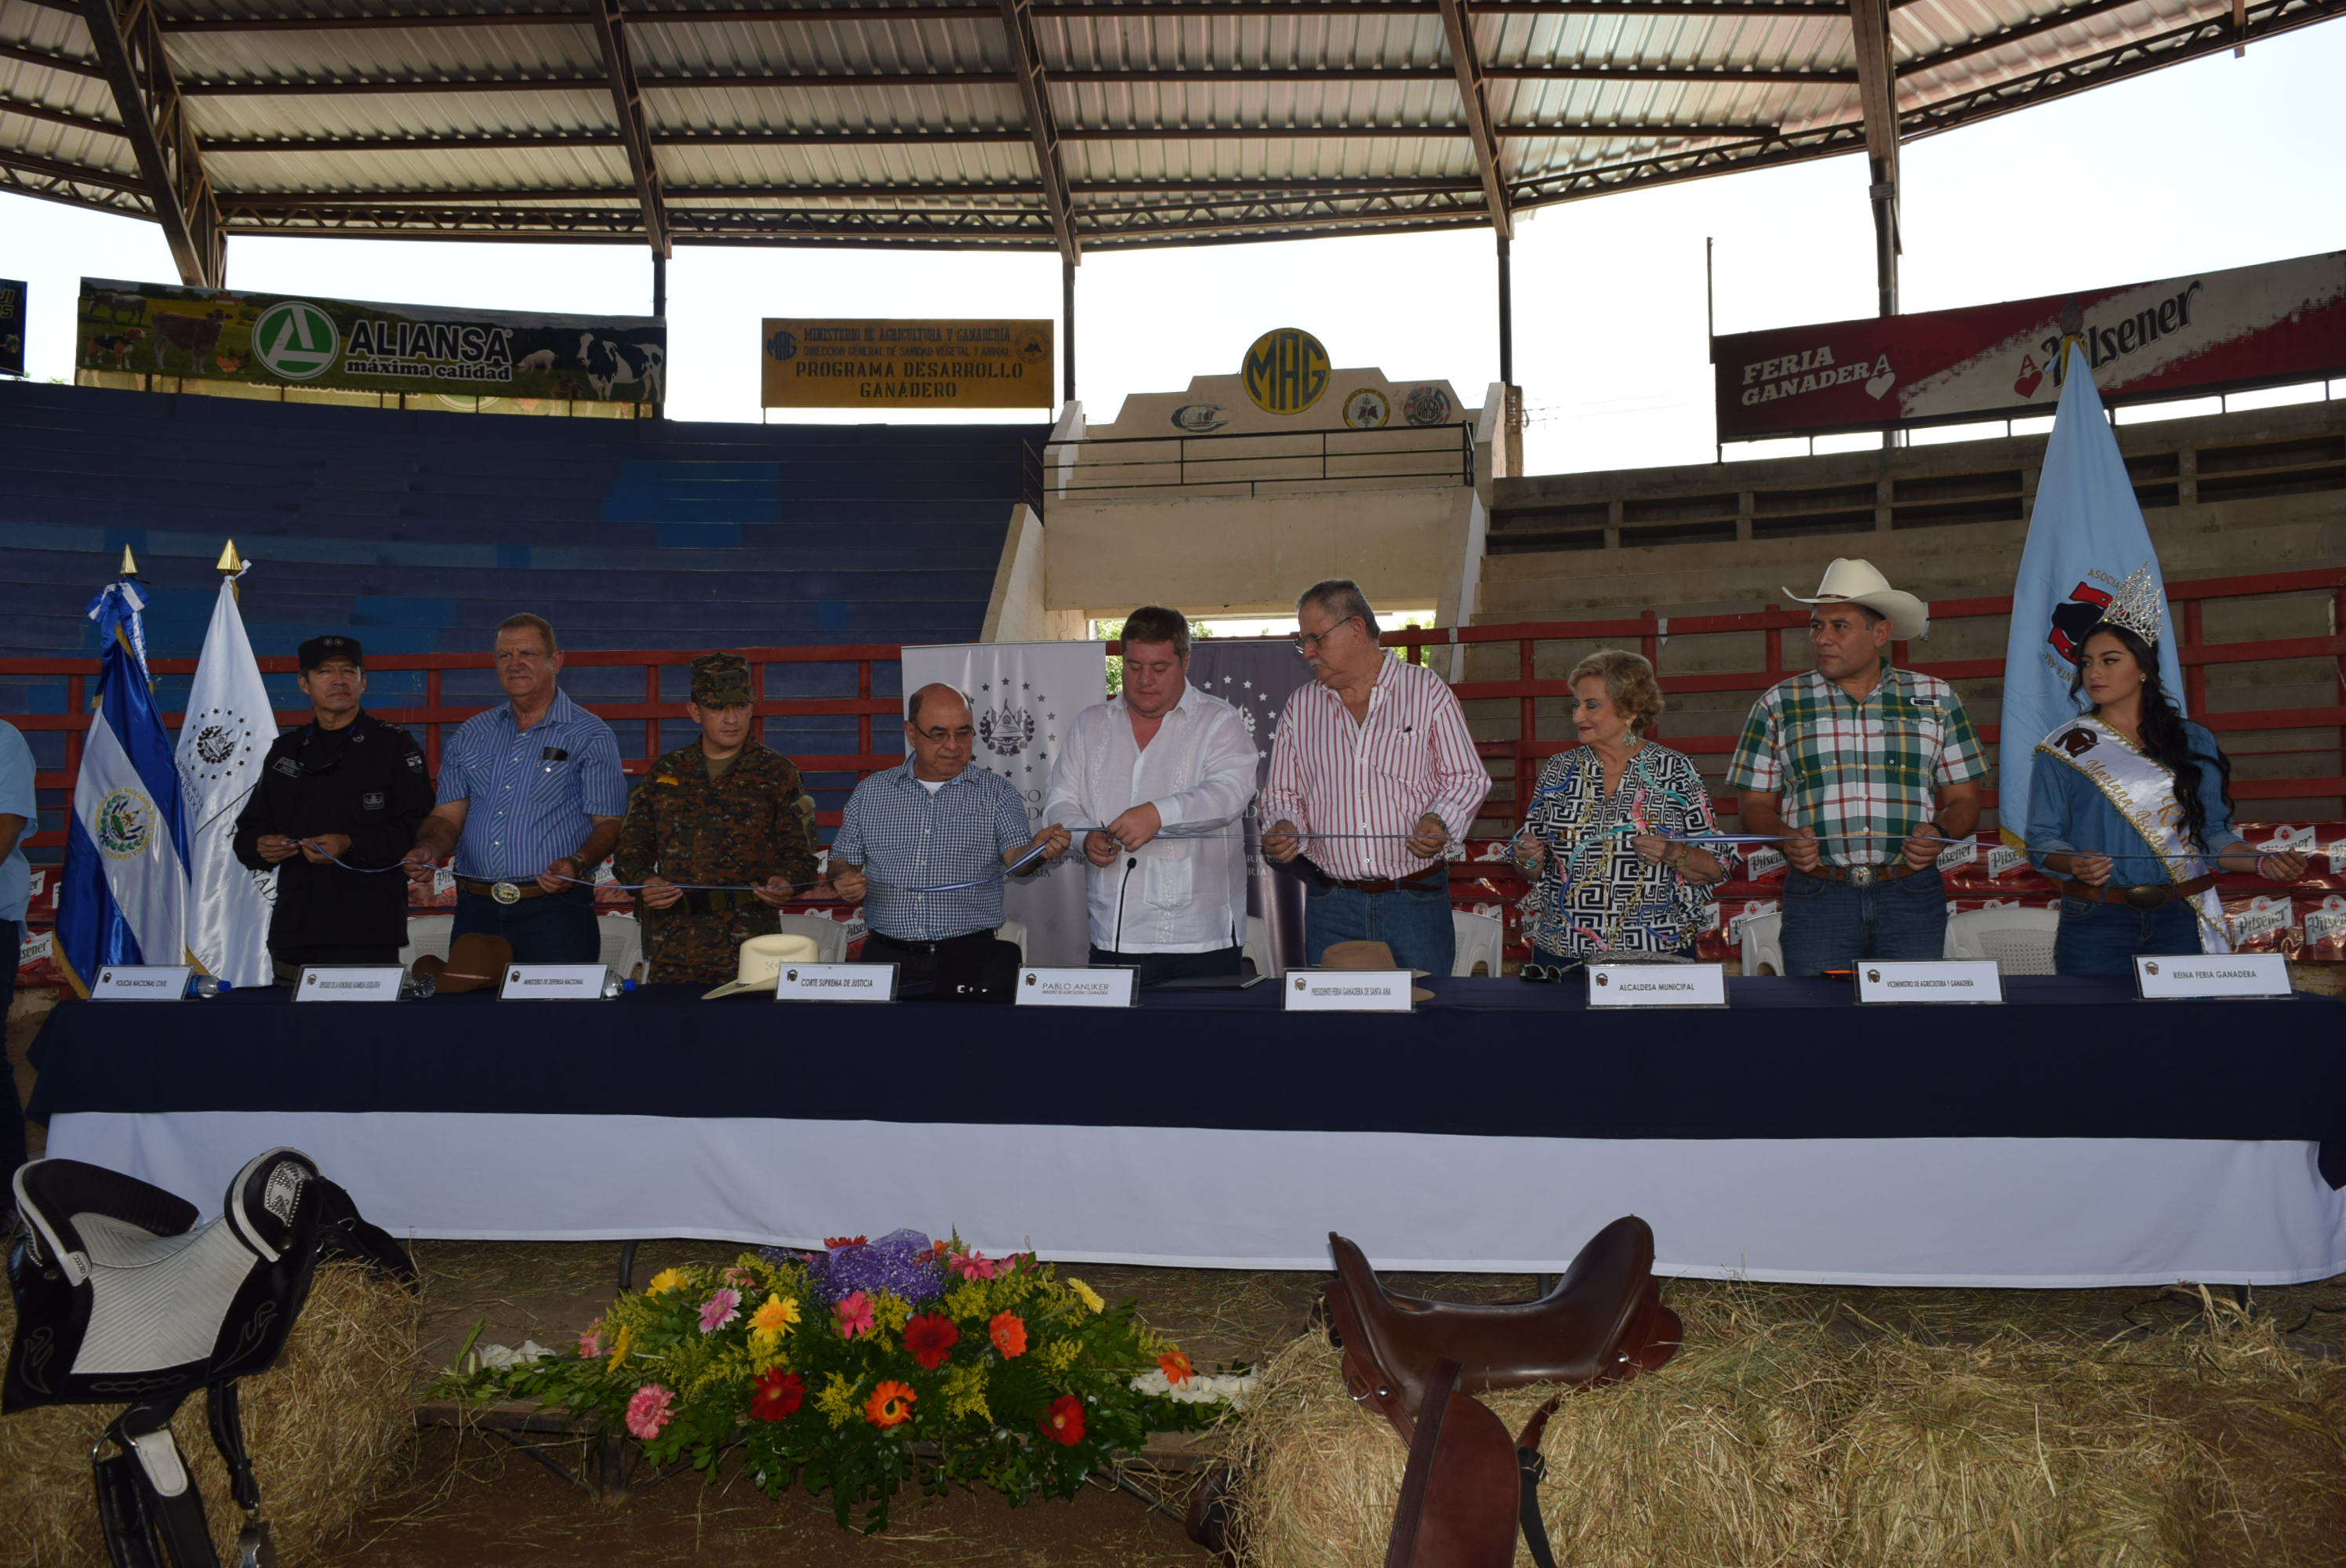 Ministro de Agricultura y Ganadería invitado especial a la Feria Ganadera Señora Santa Ana.